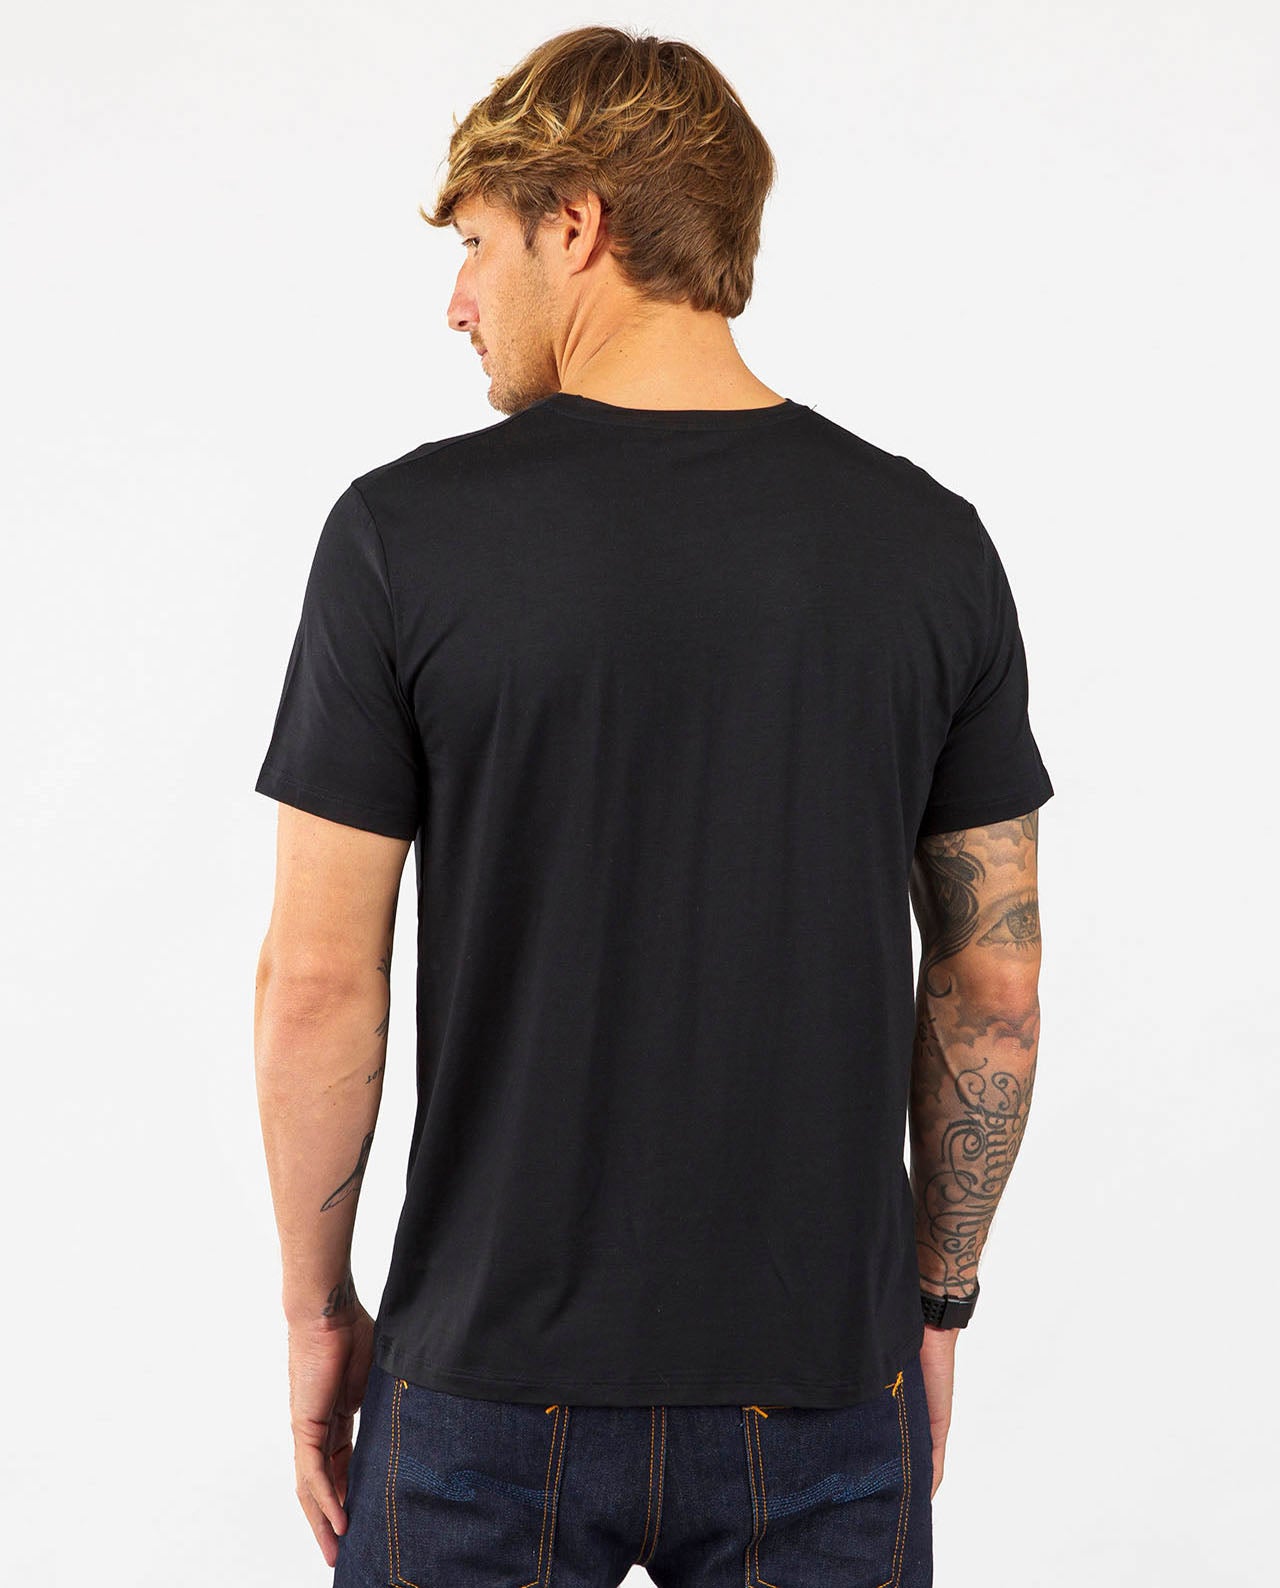 marche commun organic basics t-shirt tencel naturel manches courtes eco-responsable noir